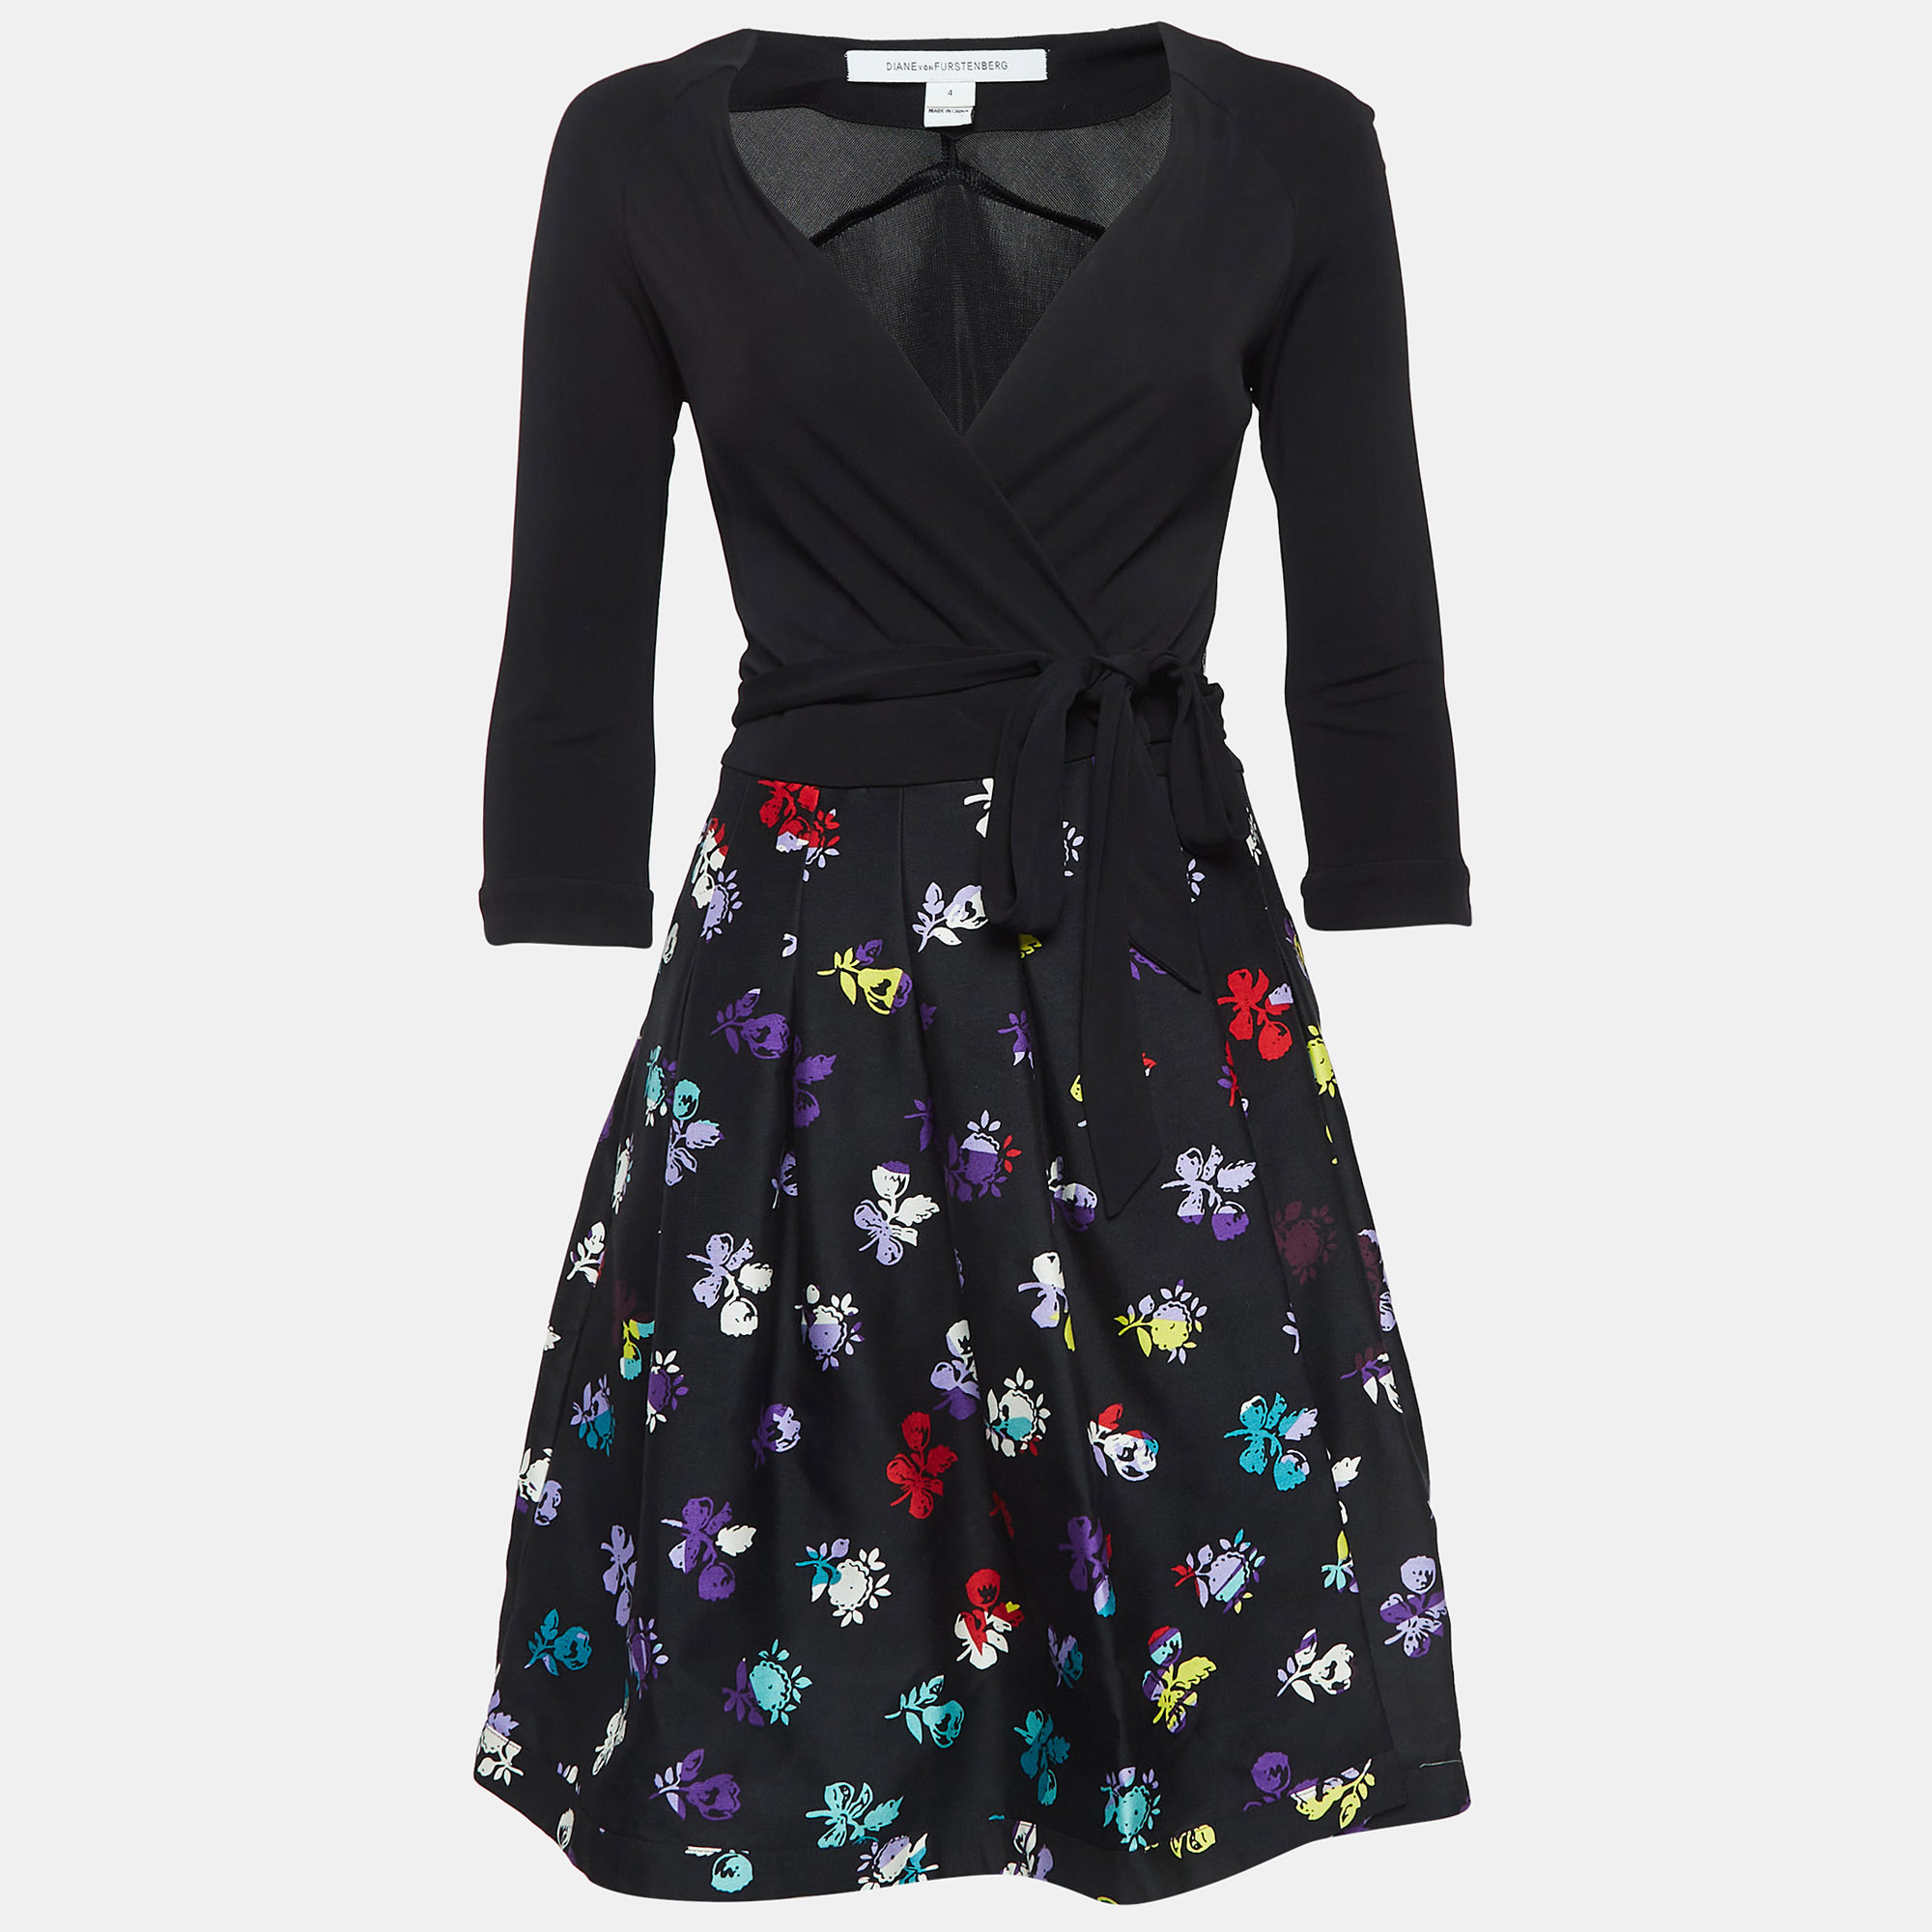 Diane von furstenberg black floral printed wool and silk wrap dress s